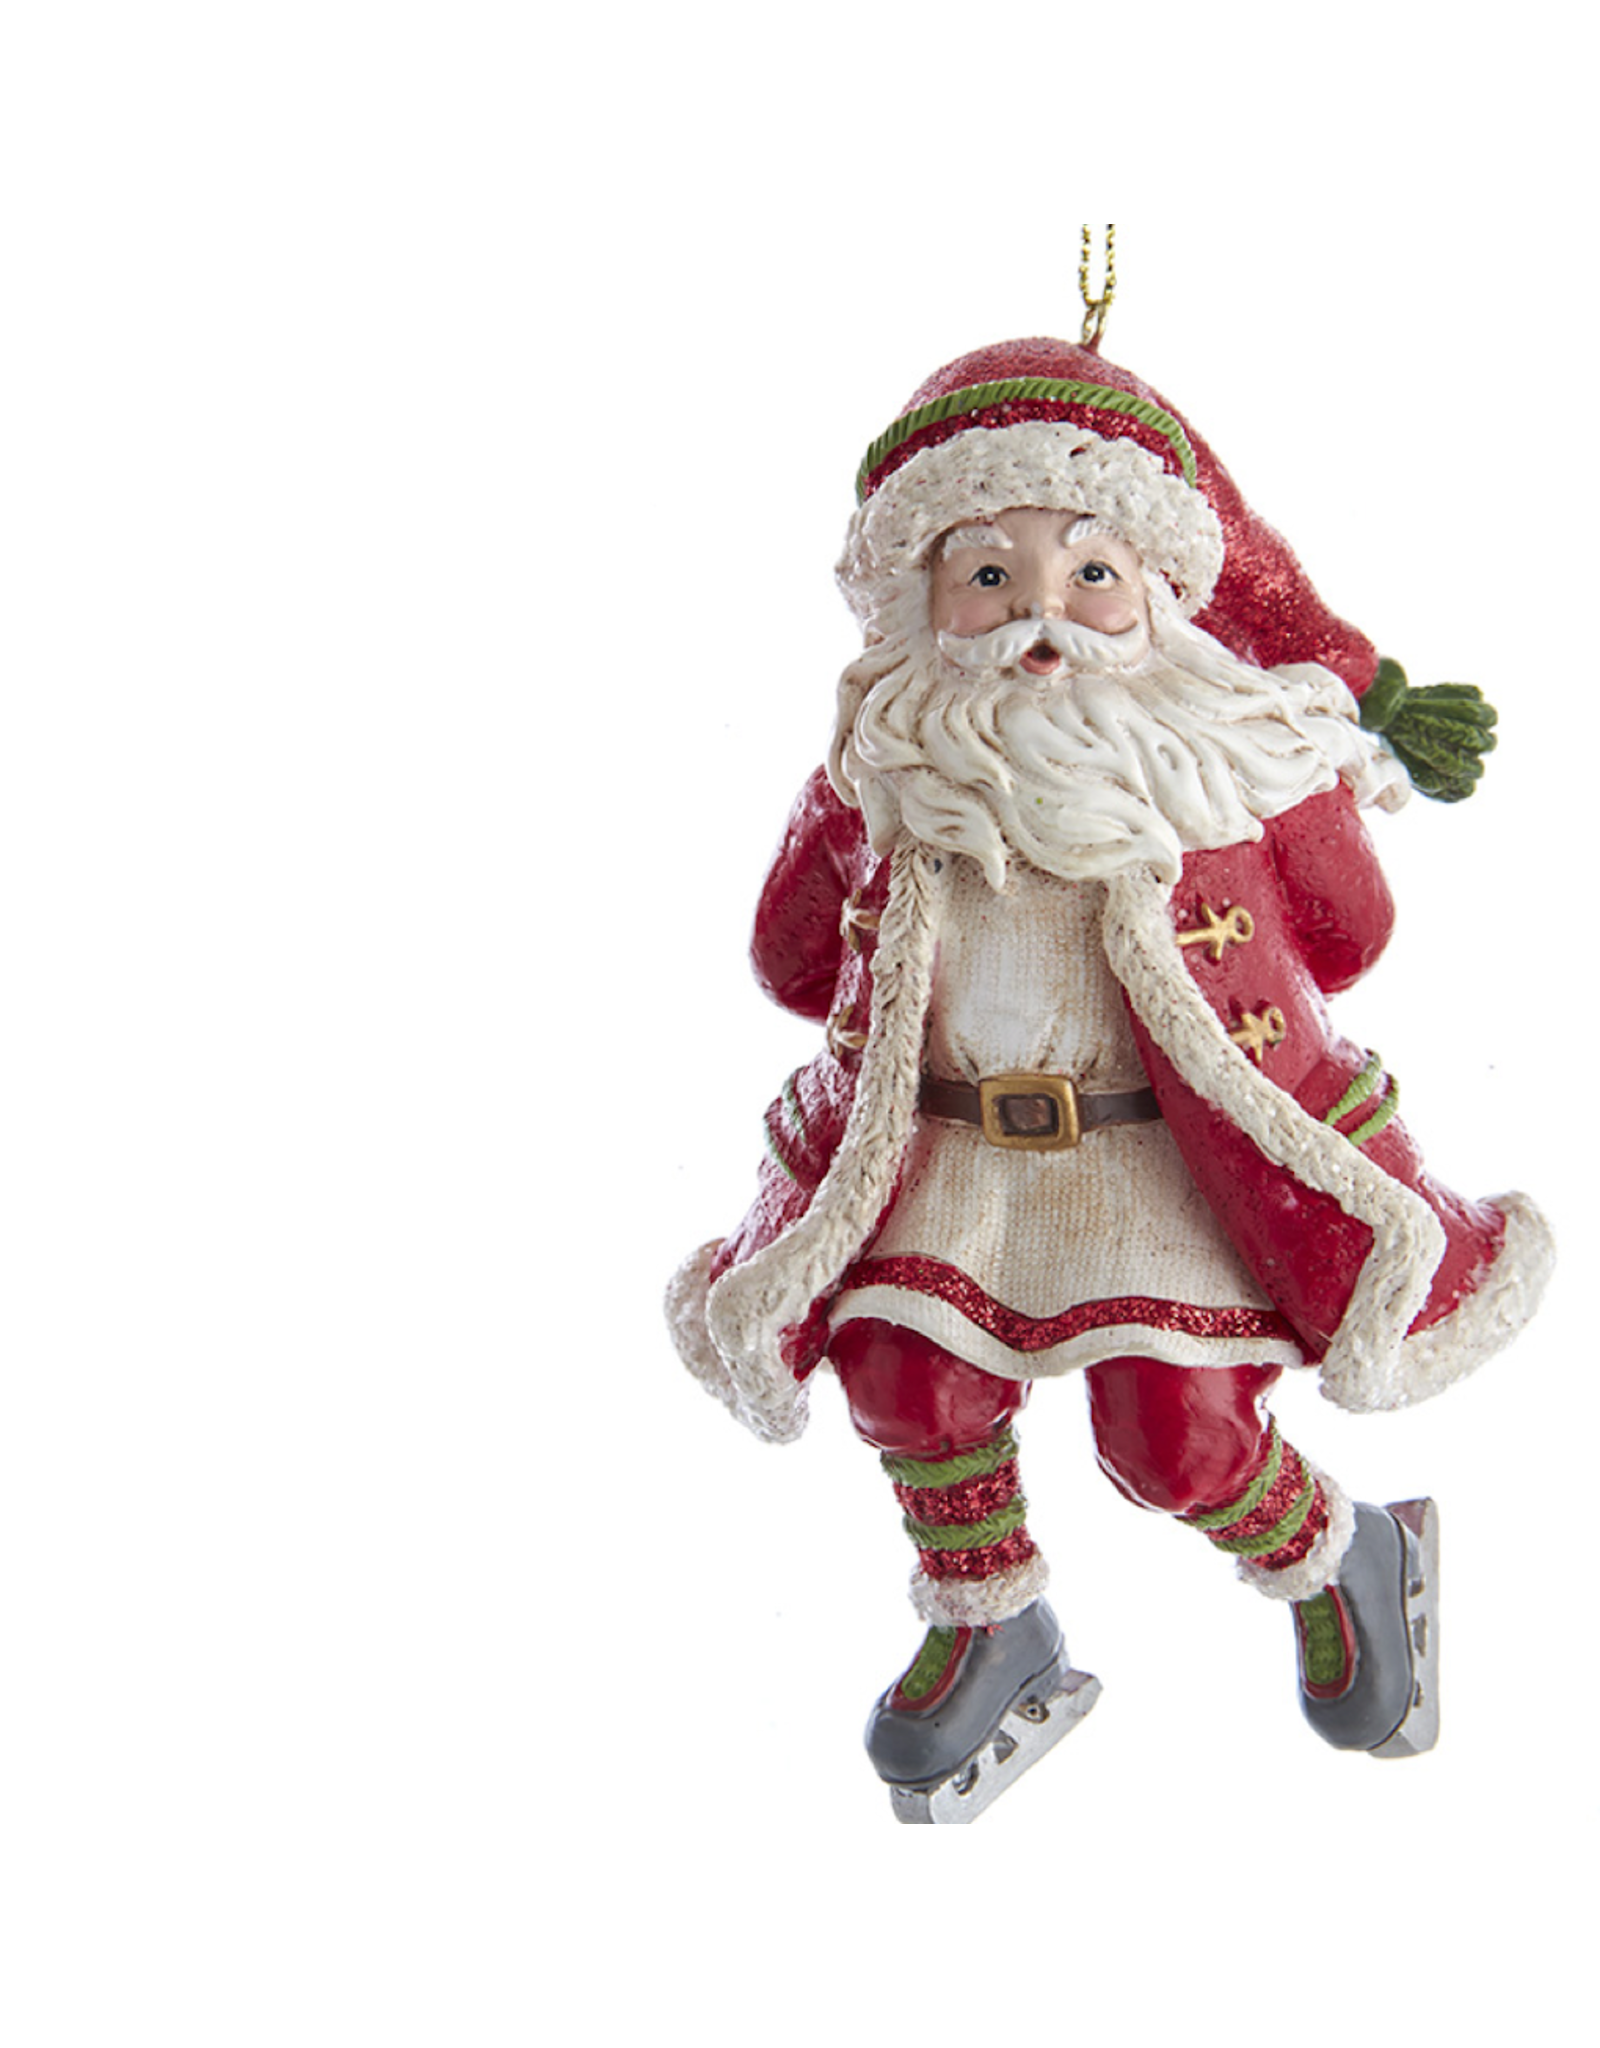 Kurt Adler Skating Santa Ornament With Hands Behind His Back